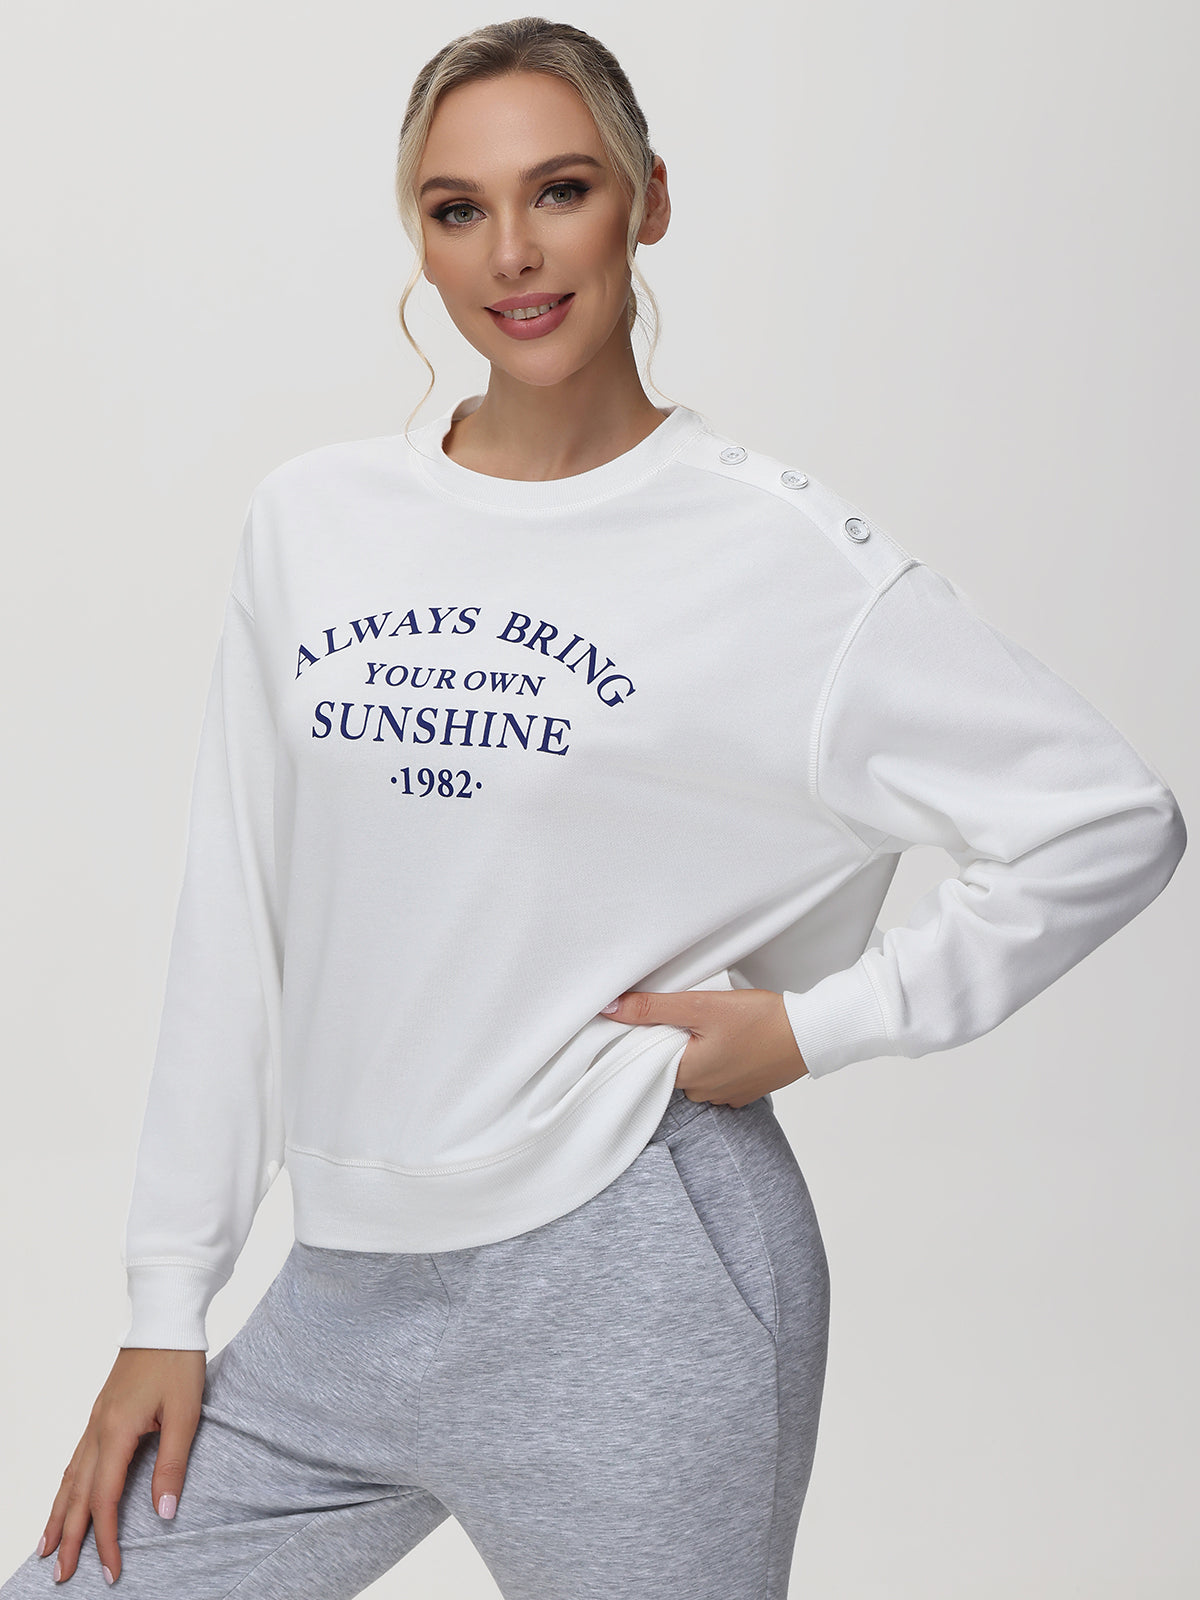 Always Bring Your Own Sunshine Graphic Sweatshirt